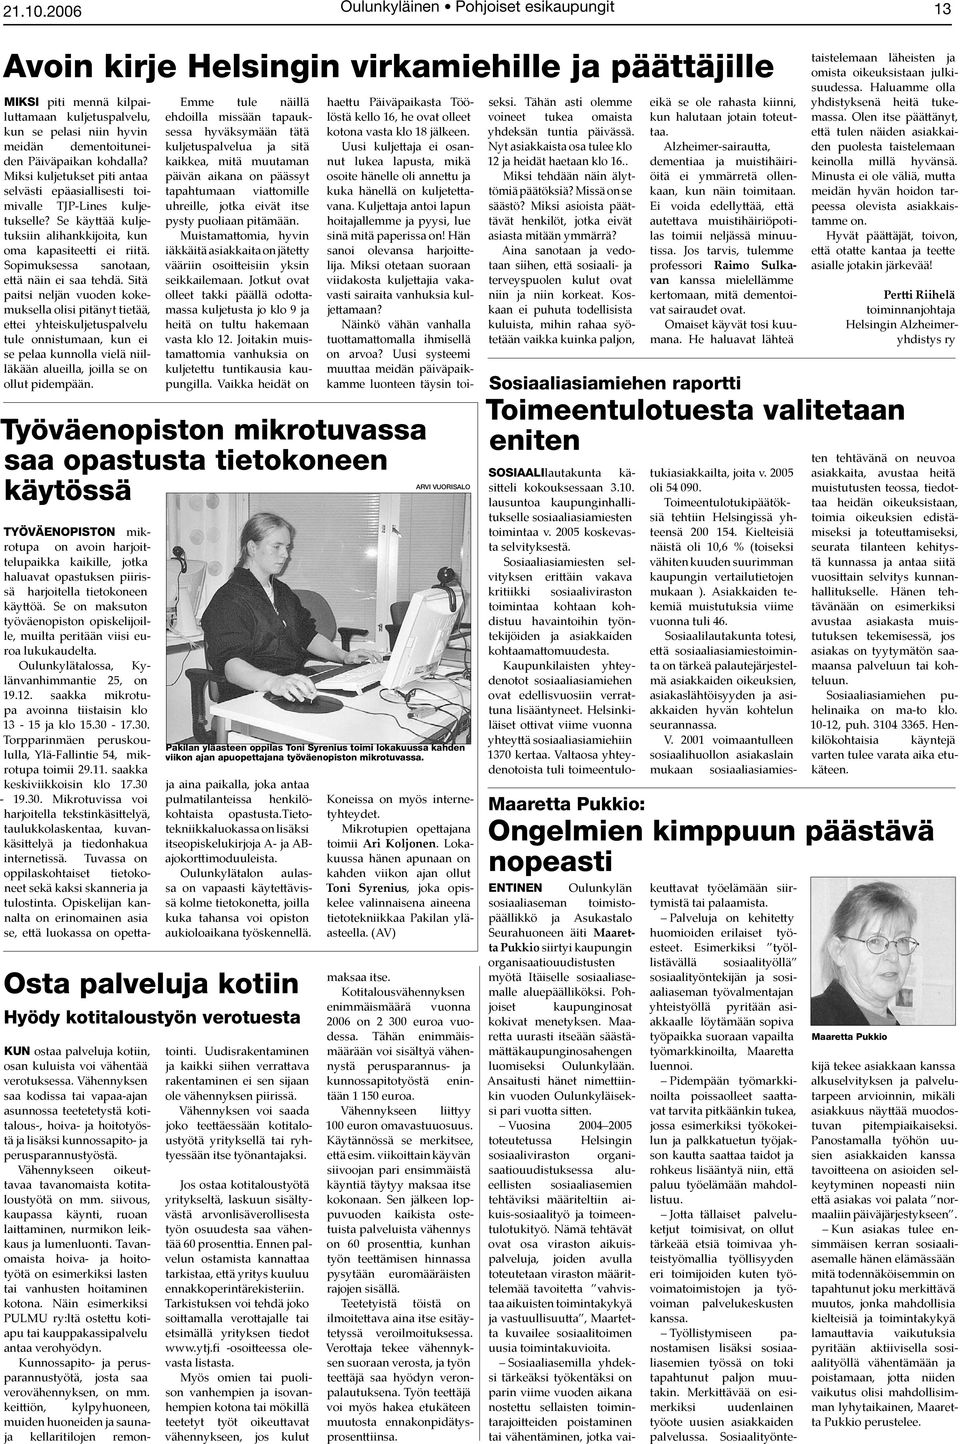 Oulunkyläinen Pohjoiset esikaupungit - PDF Free Download